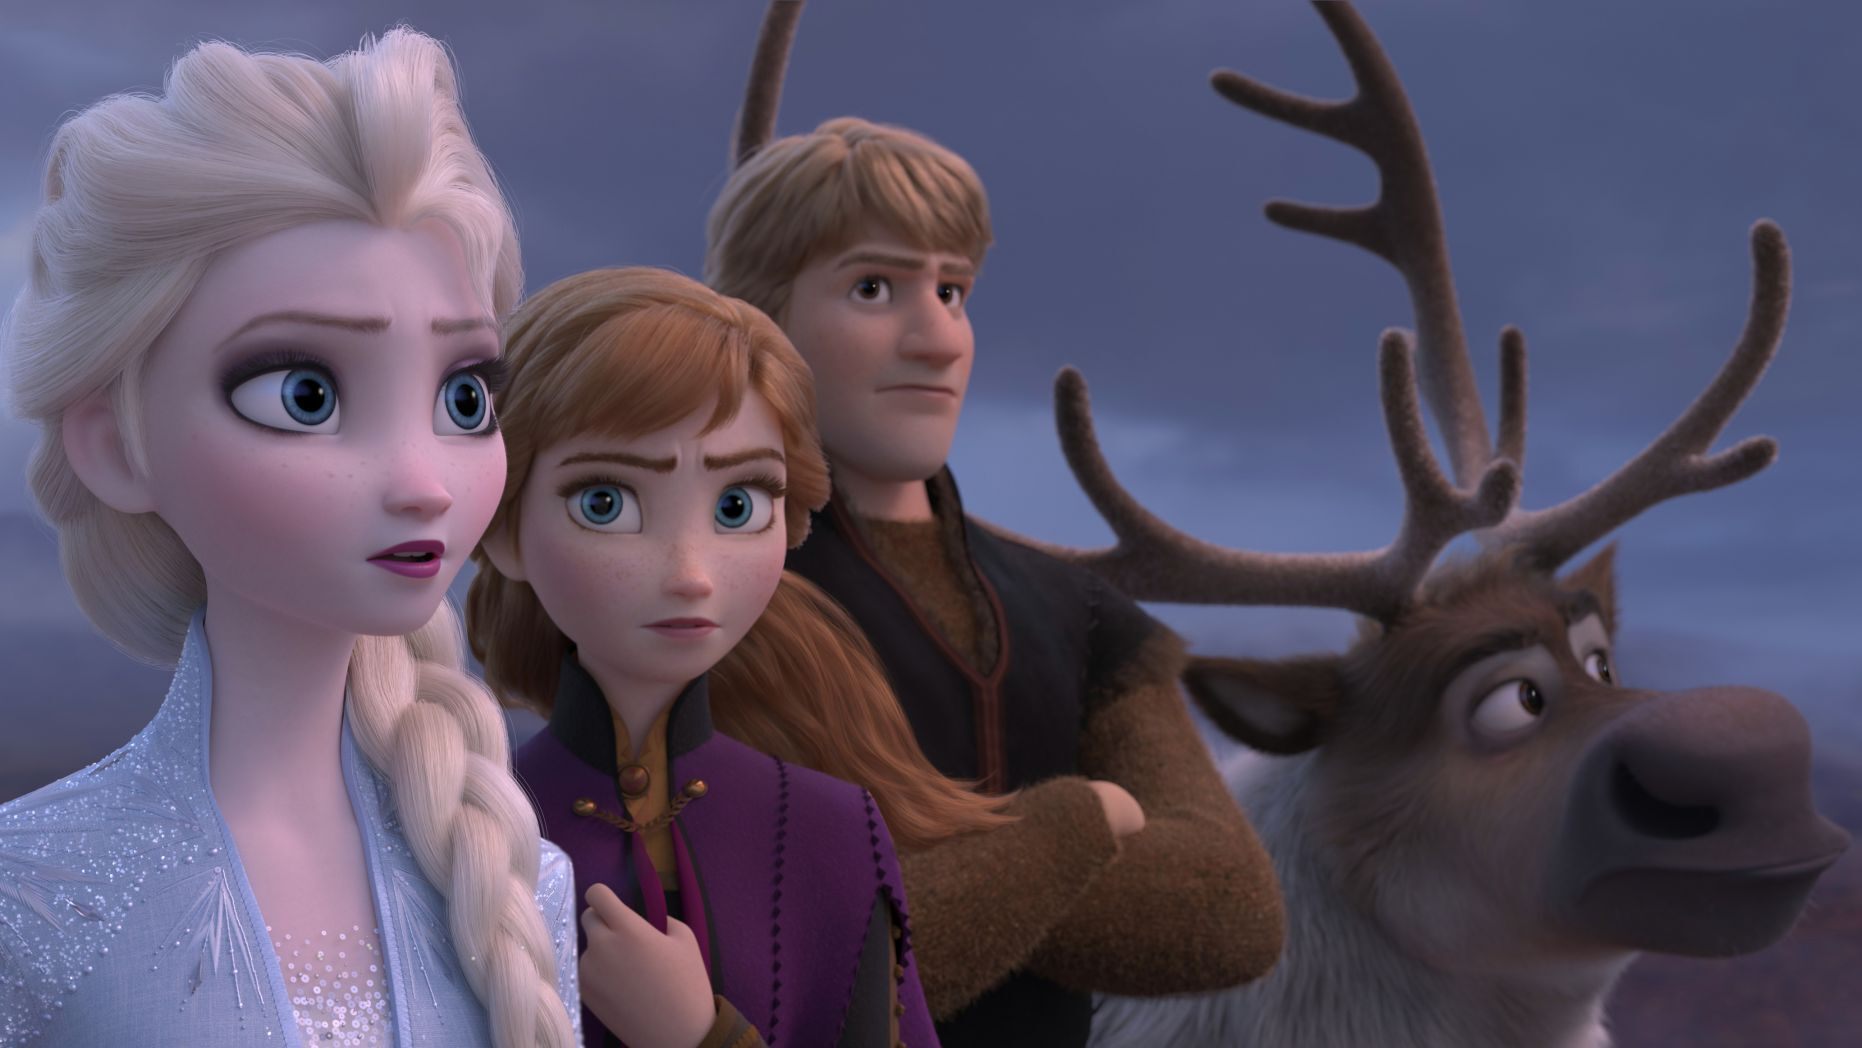 《冰雪奇缘2》是有史以来票房最高的动画片,票房收入14亿美元